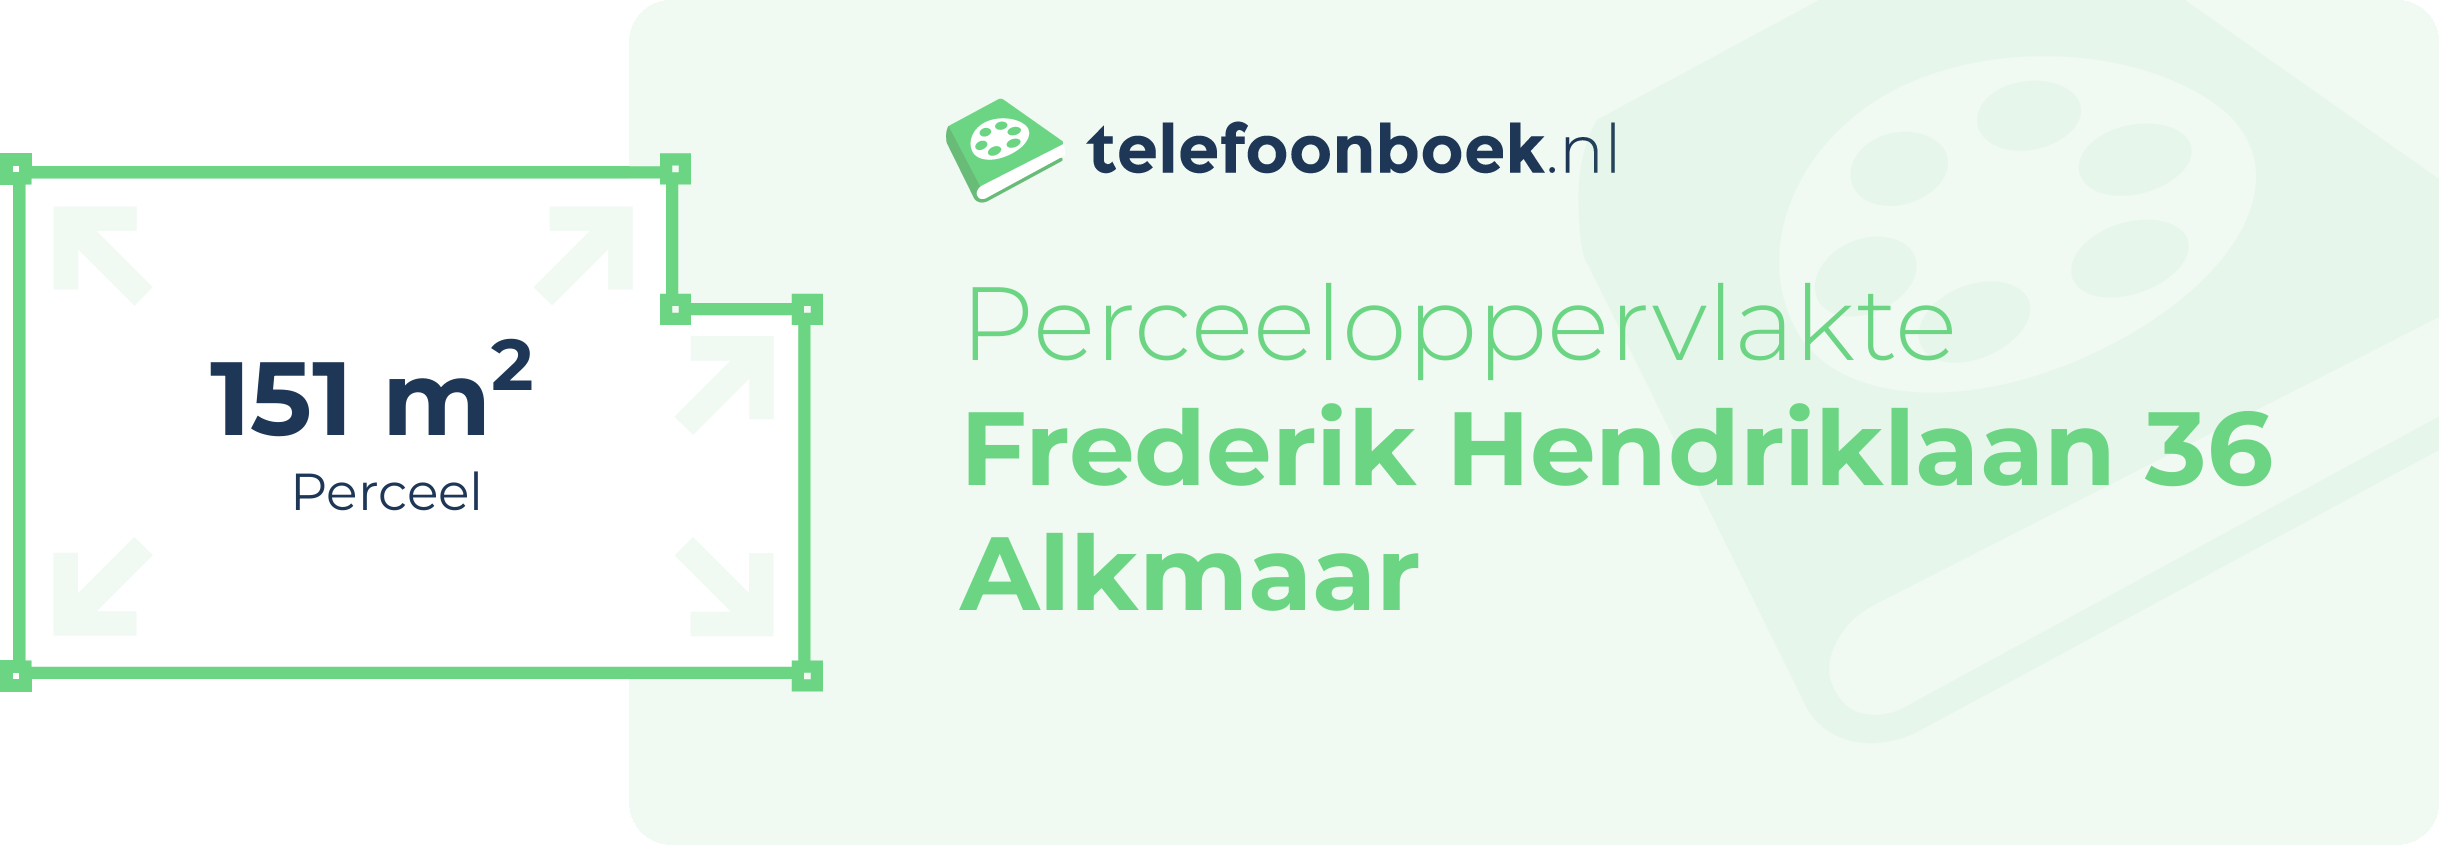 Perceeloppervlakte Frederik Hendriklaan 36 Alkmaar